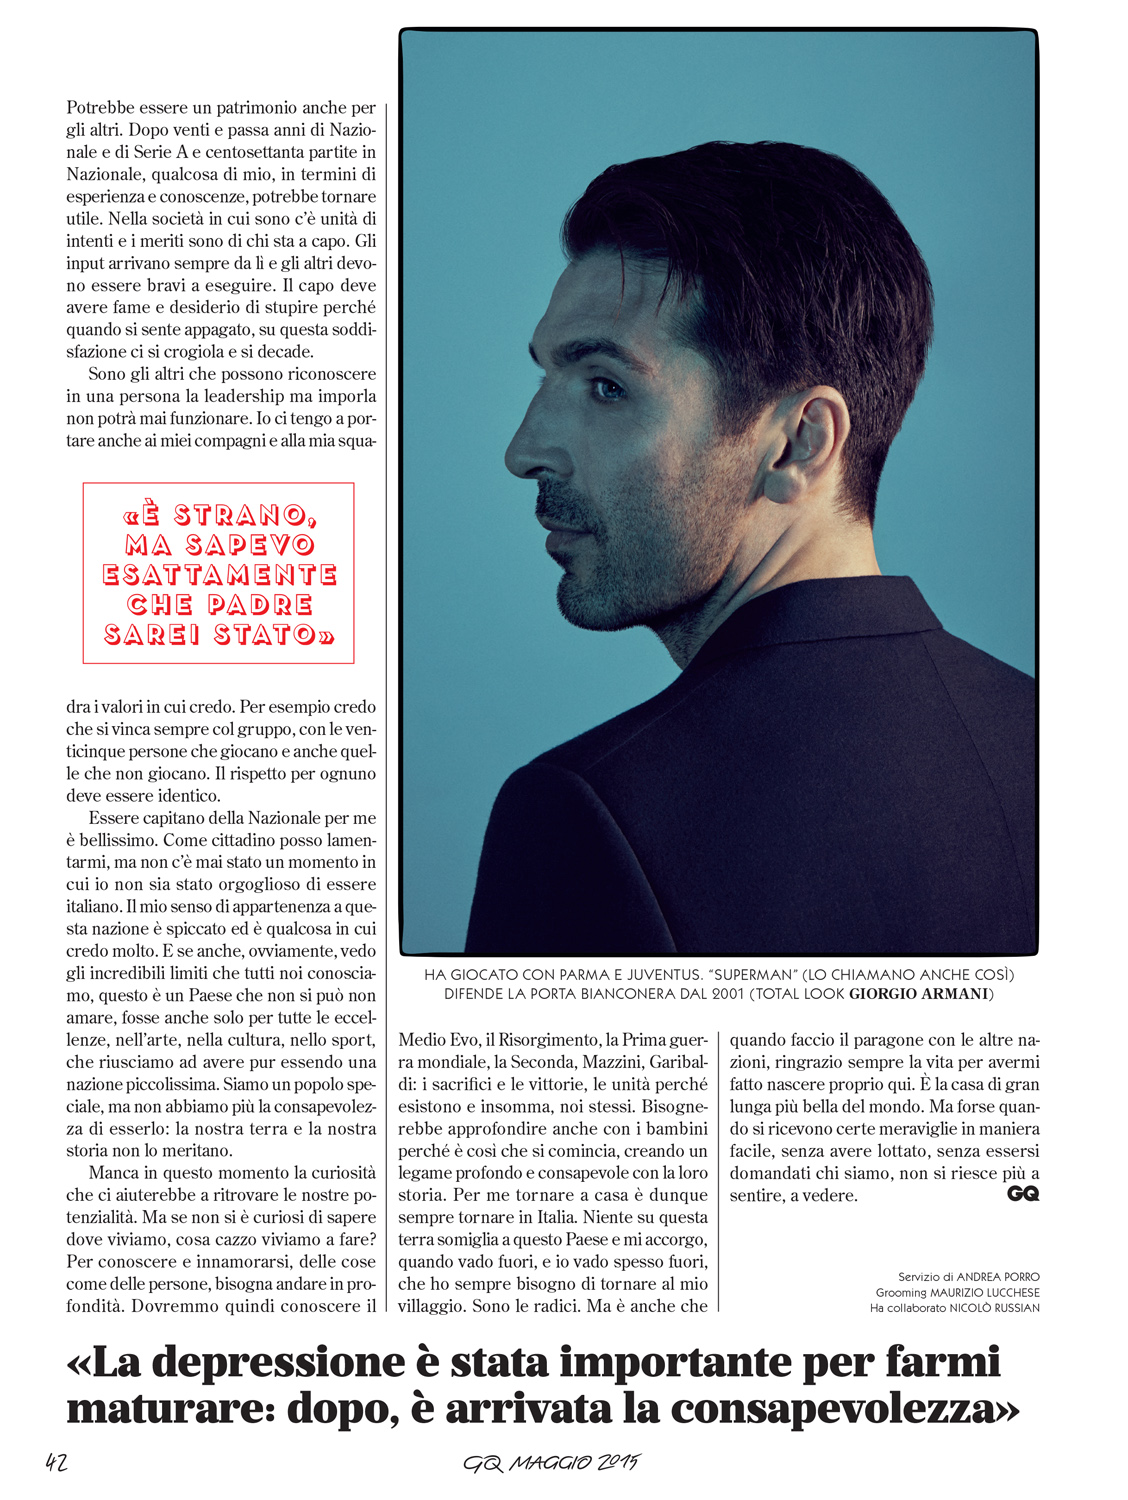 GQ Italia may 2015 | Mattia Balsamini | GQ Italia | Numerique Retouch Photo Retouching Studio